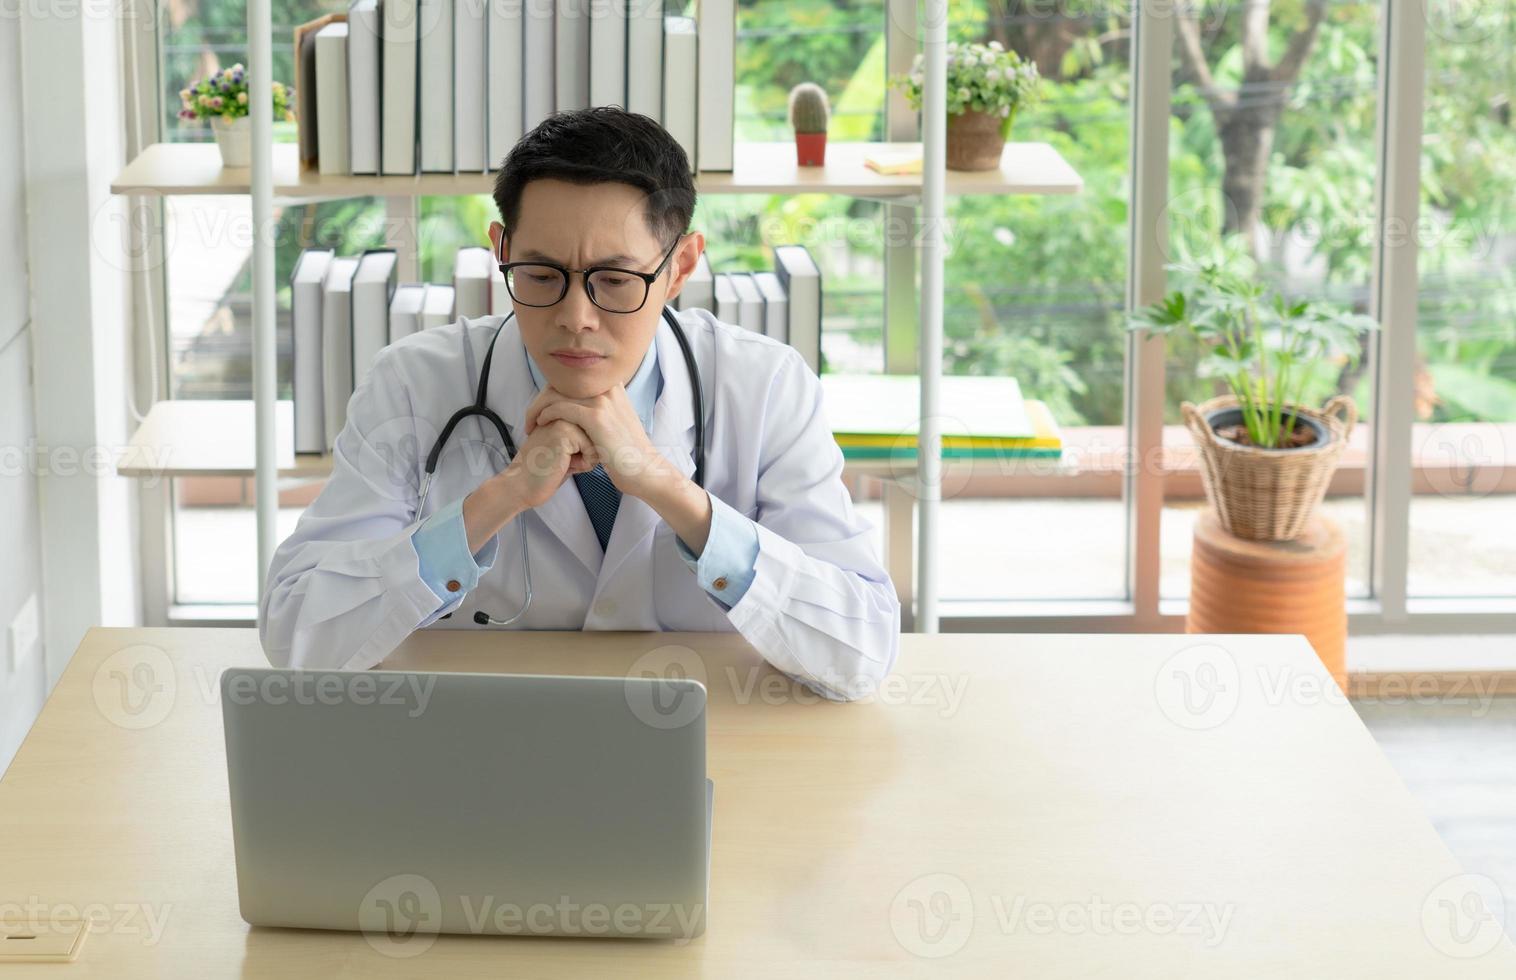 jovem médico asiático usando computador no escritório do hospital foto